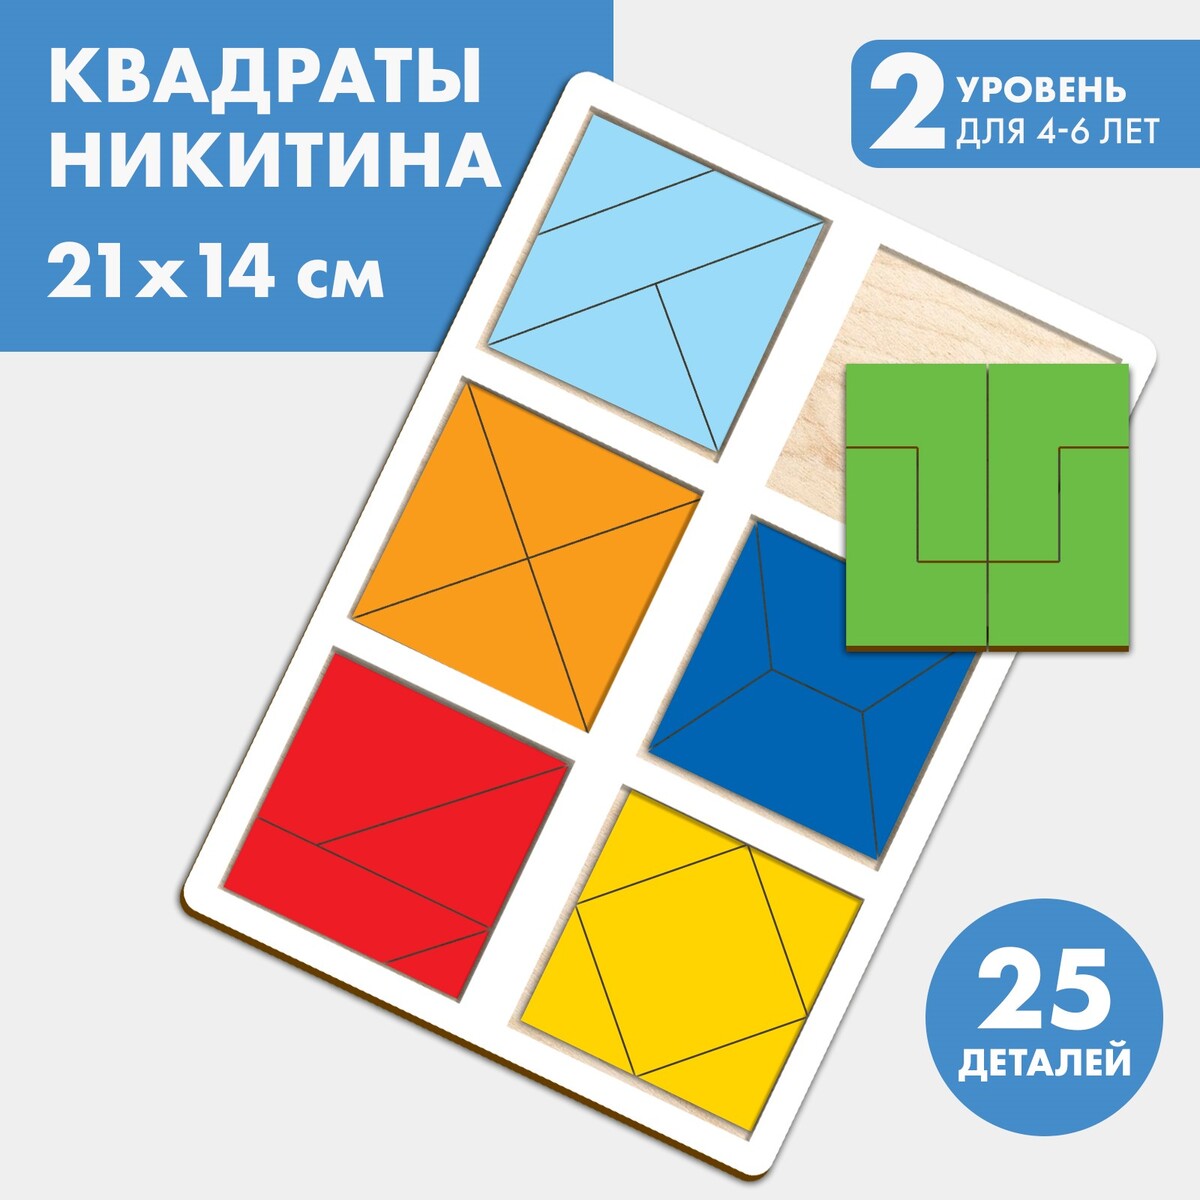 Квадраты 2 уровень, 6 квадратов квадраты никитина 3 уровня 6 квадратов бизиборды